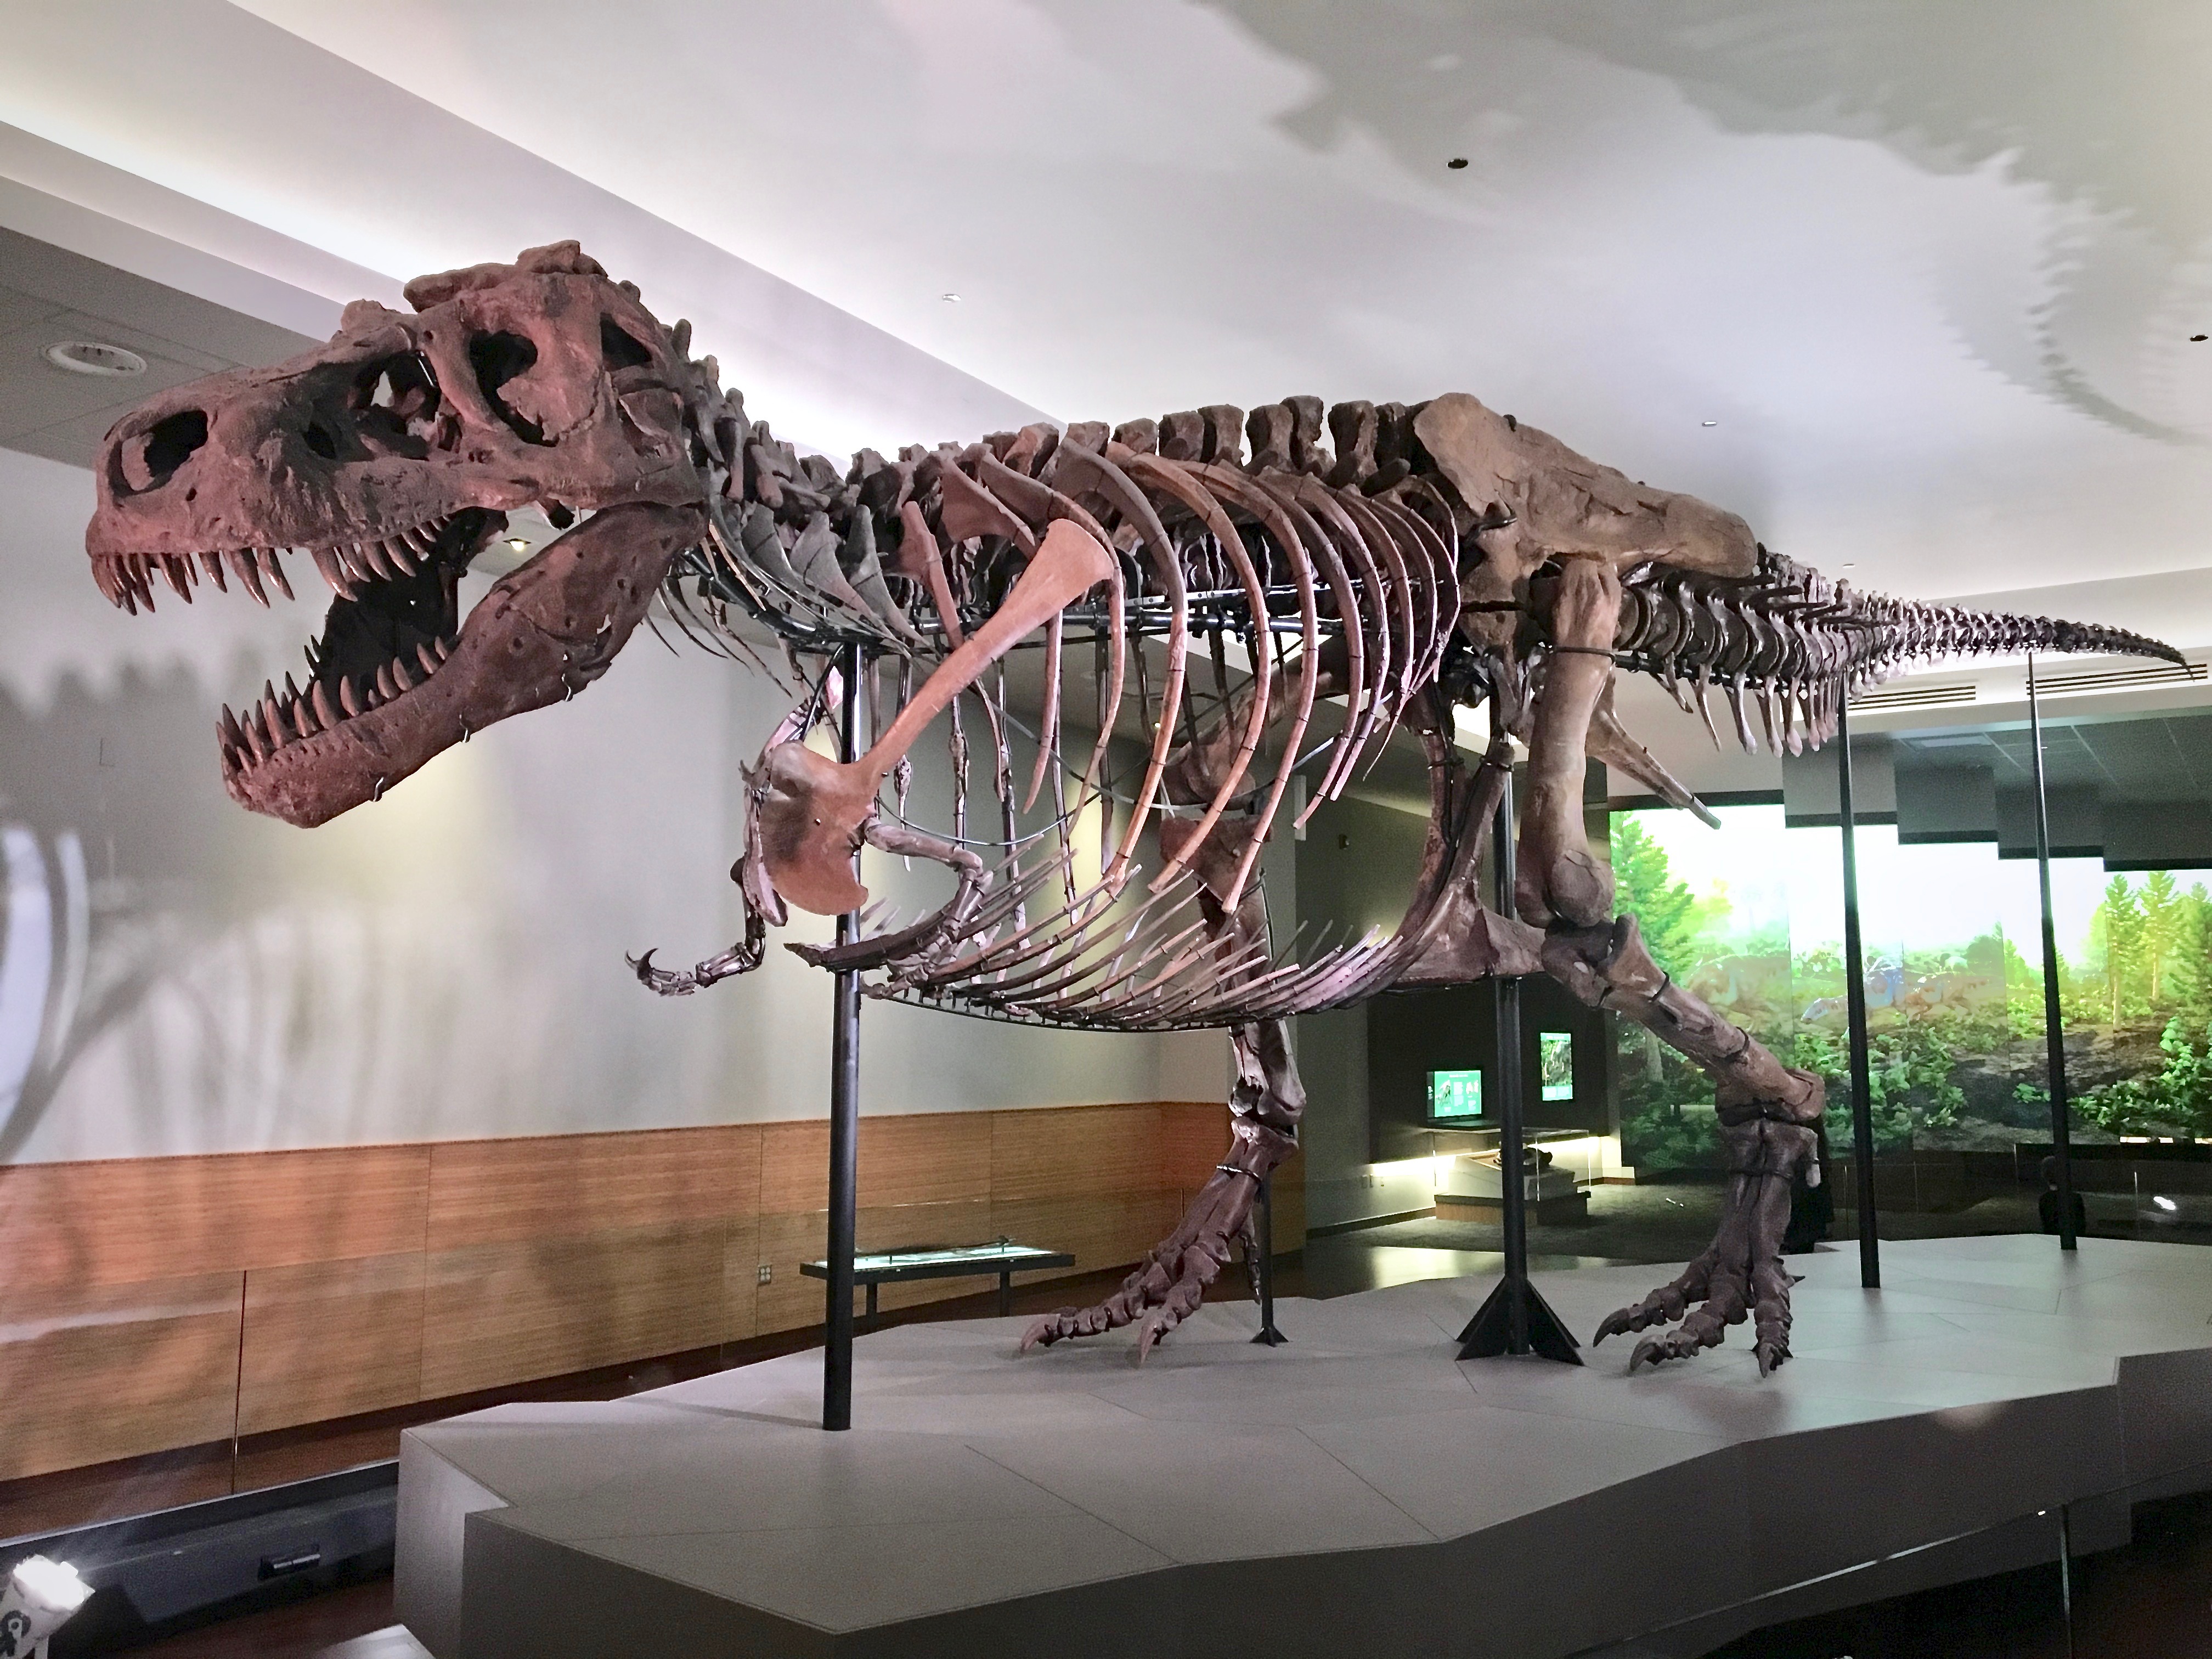 Jeden z největších známých exemplářů tyranosaura, „Sue“ z Field Museum of Natural History v Chicagu. Tento dle odhadů asi 8,4 tuny vážící jedinec, objevený v roce 1990 na území Jižní Dakoty, zahynul zhruba před 67 miliony let. Příčina smrti zůstává n